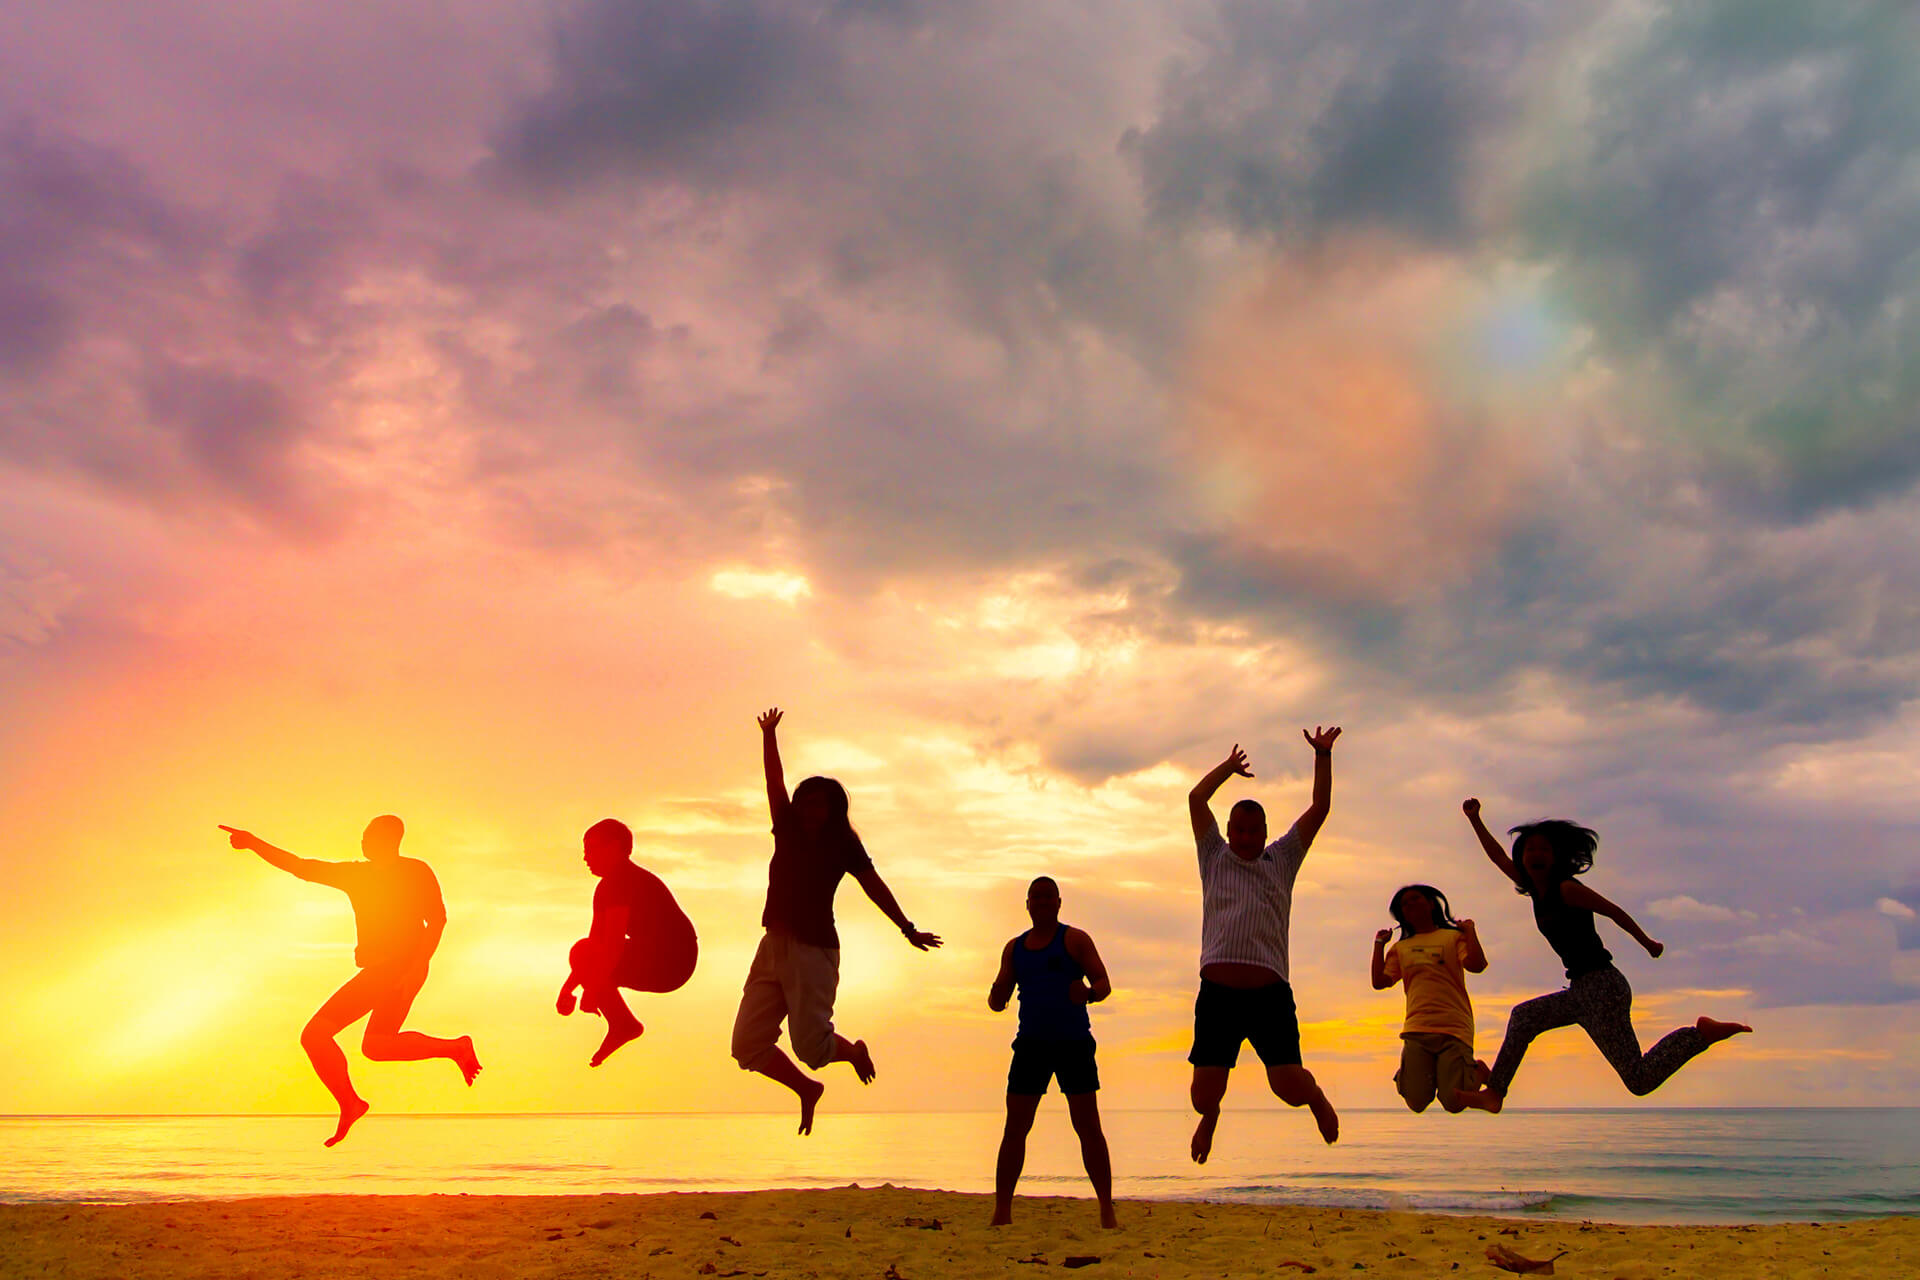 Sieben junge Menschen springen in jubelnder Pose an einem Strand während eines Sonnenuntergangs.